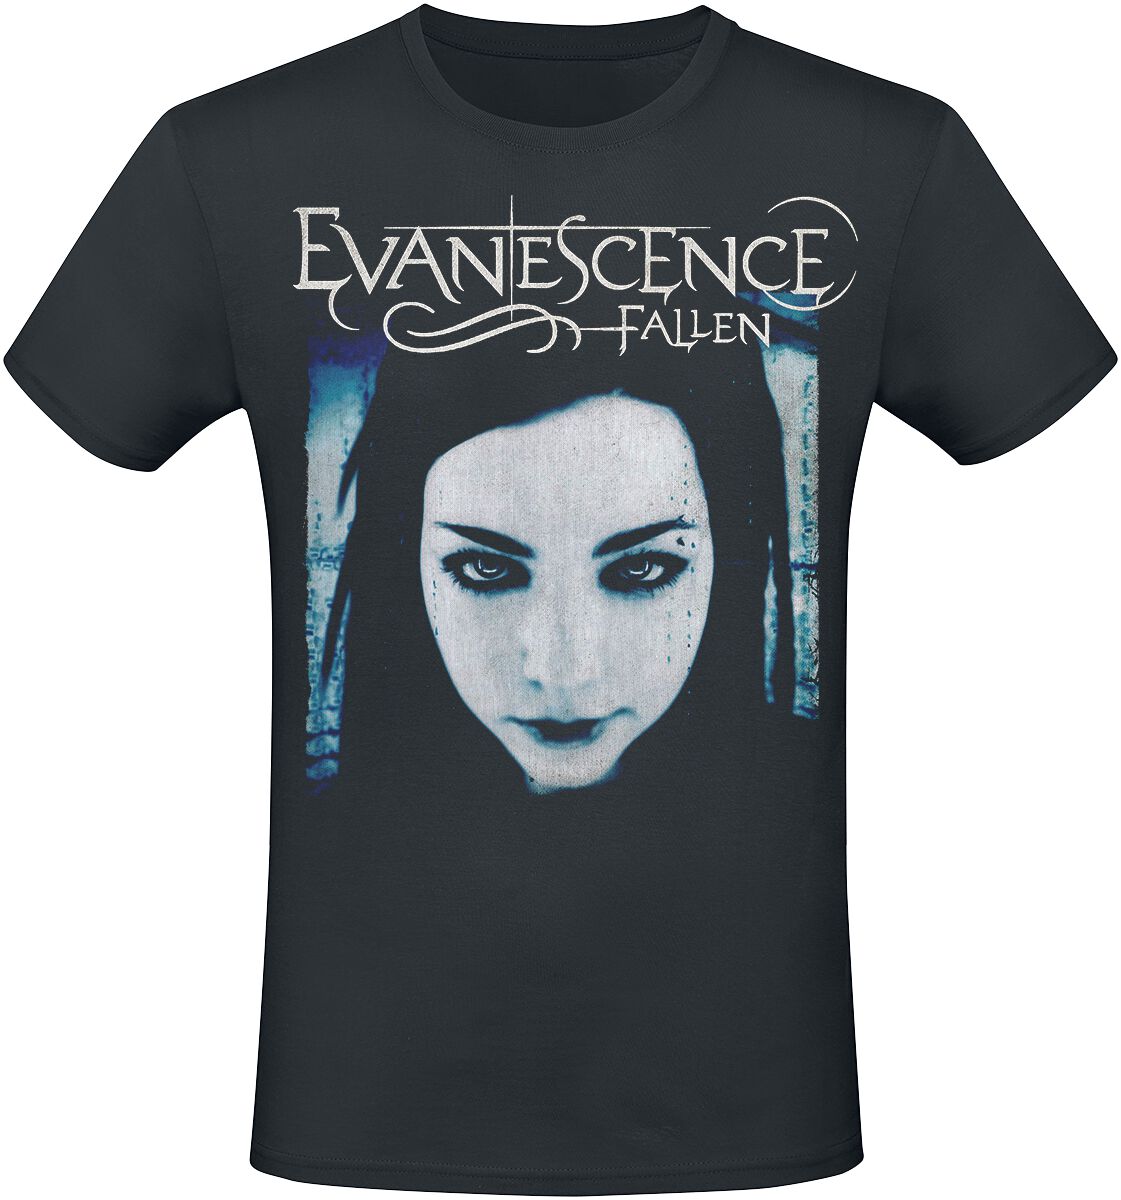 Evanescence T-Shirt - Fallen - S bis XXL - für Männer - Größe XL - schwarz  - Lizenziertes Merchandise!